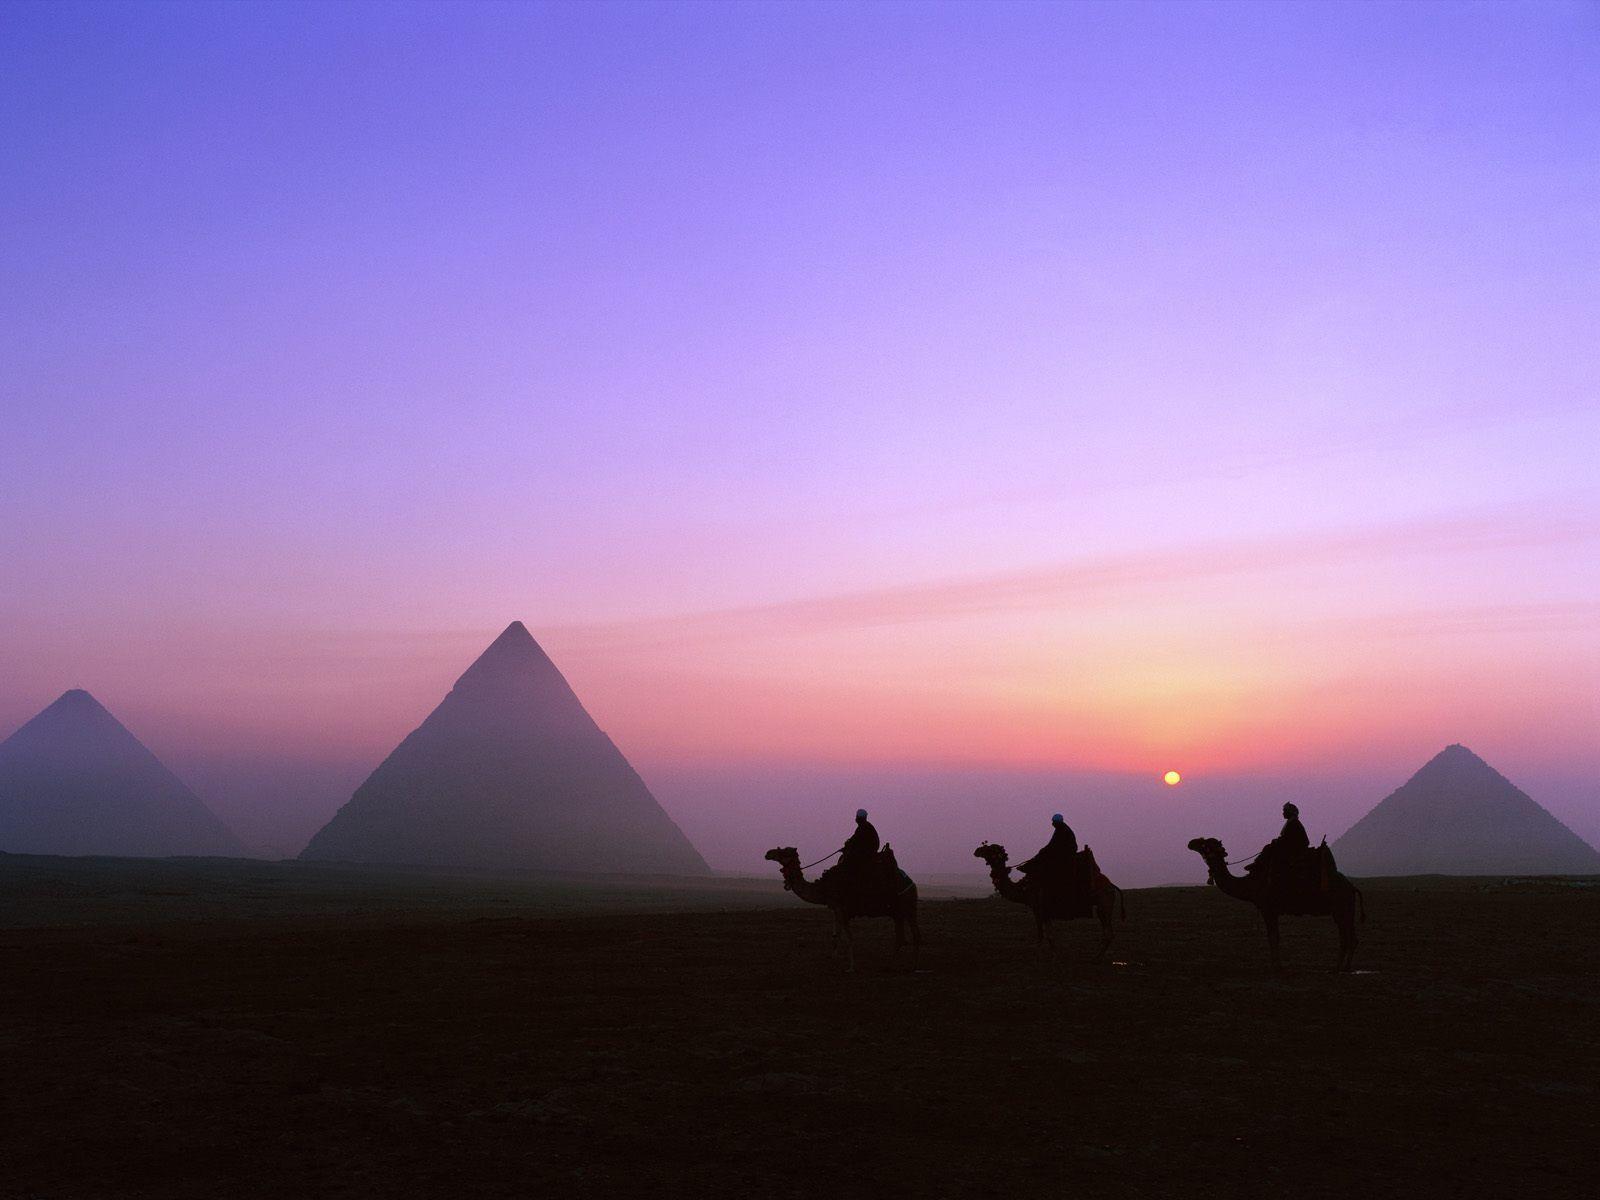 Hd Ancient Egypt Pyramids Egyptian Wallpaper iPhone Desktop High